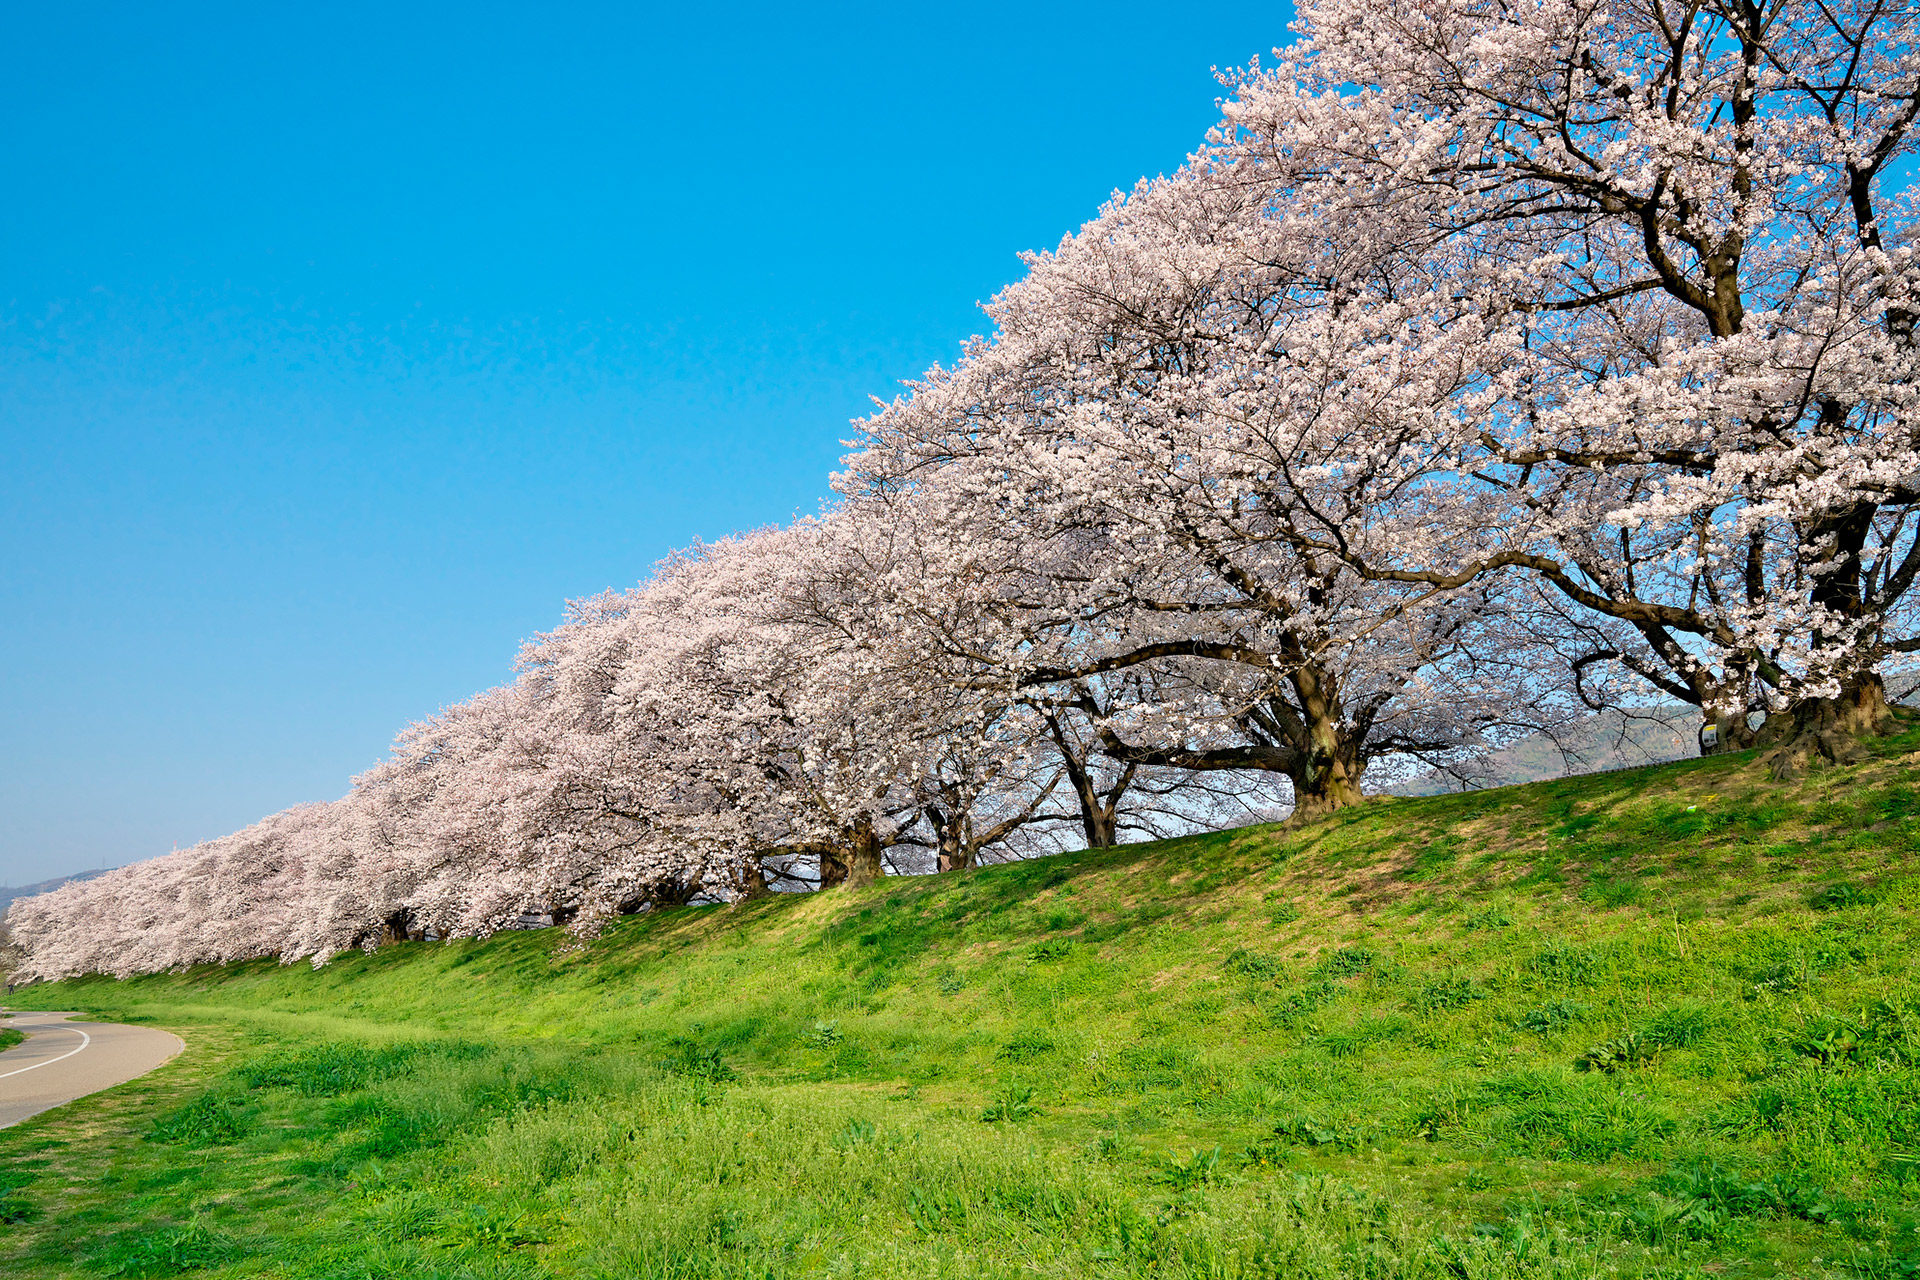 京都櫻花盛開的時期是什麼時候